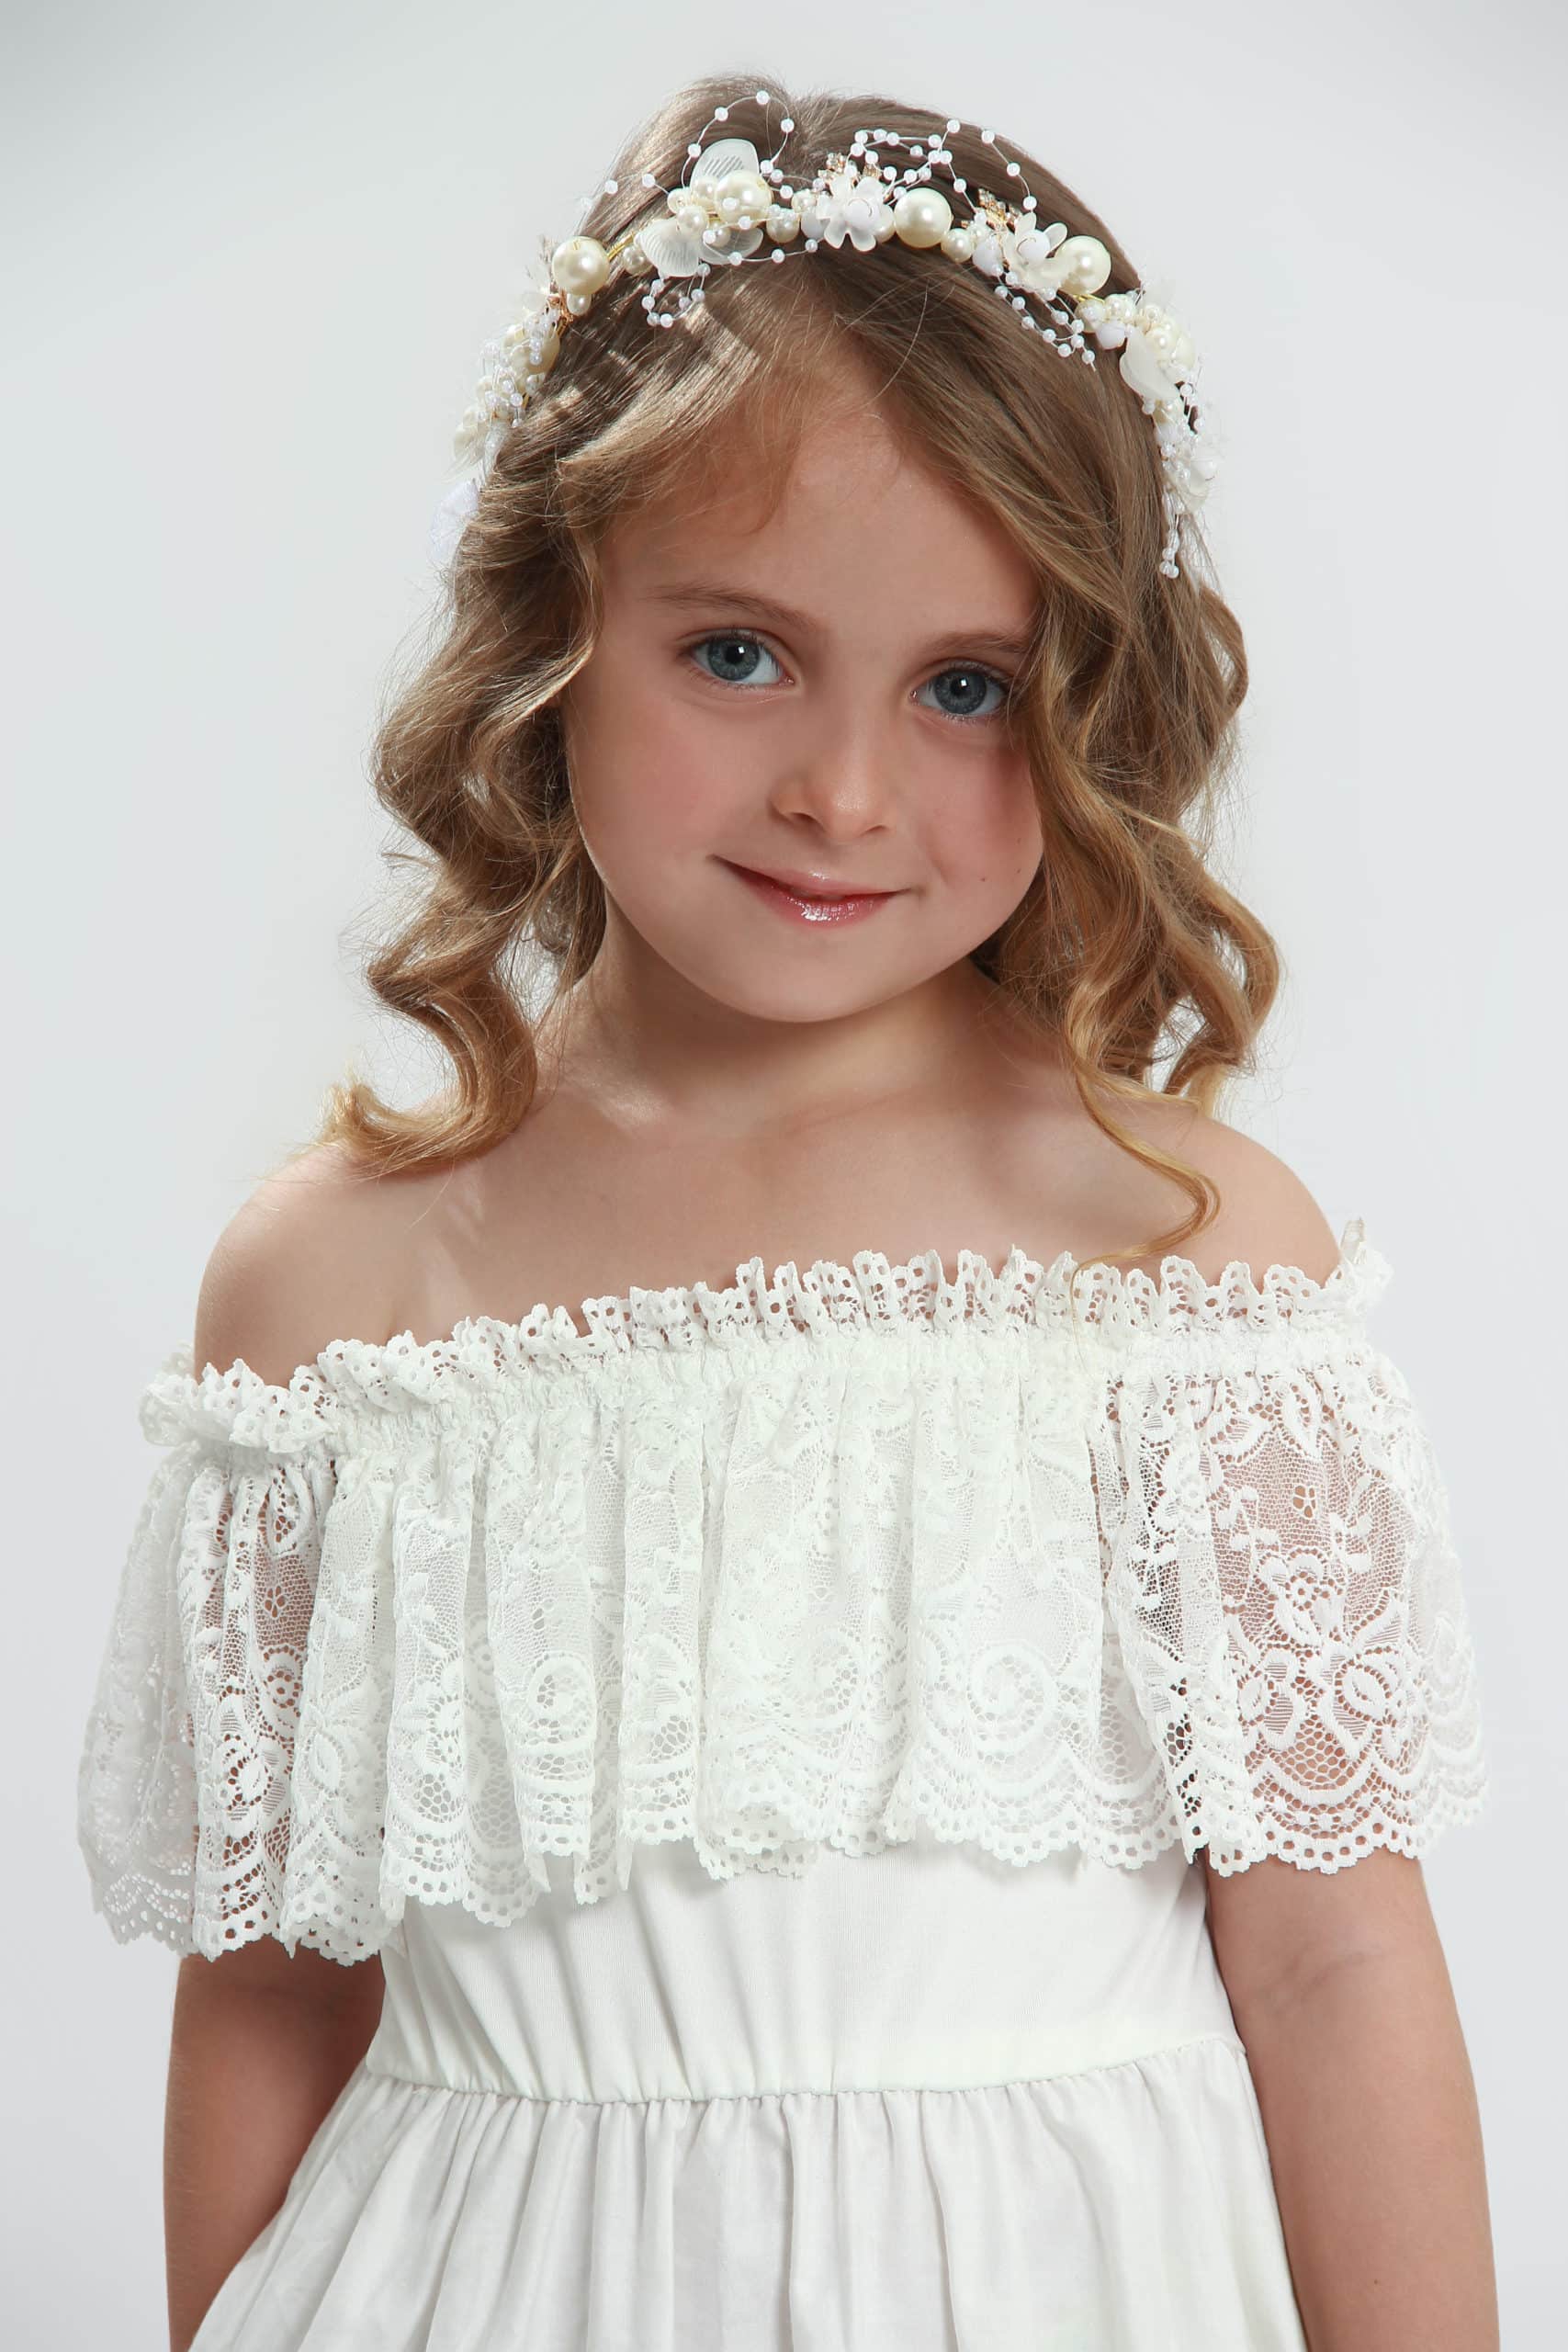 Vestido Longo de Princesa infantil elegante menina 1ª Comunhão Festa  Daminha Batizado Branco Premium Luxo - Auhe Kids